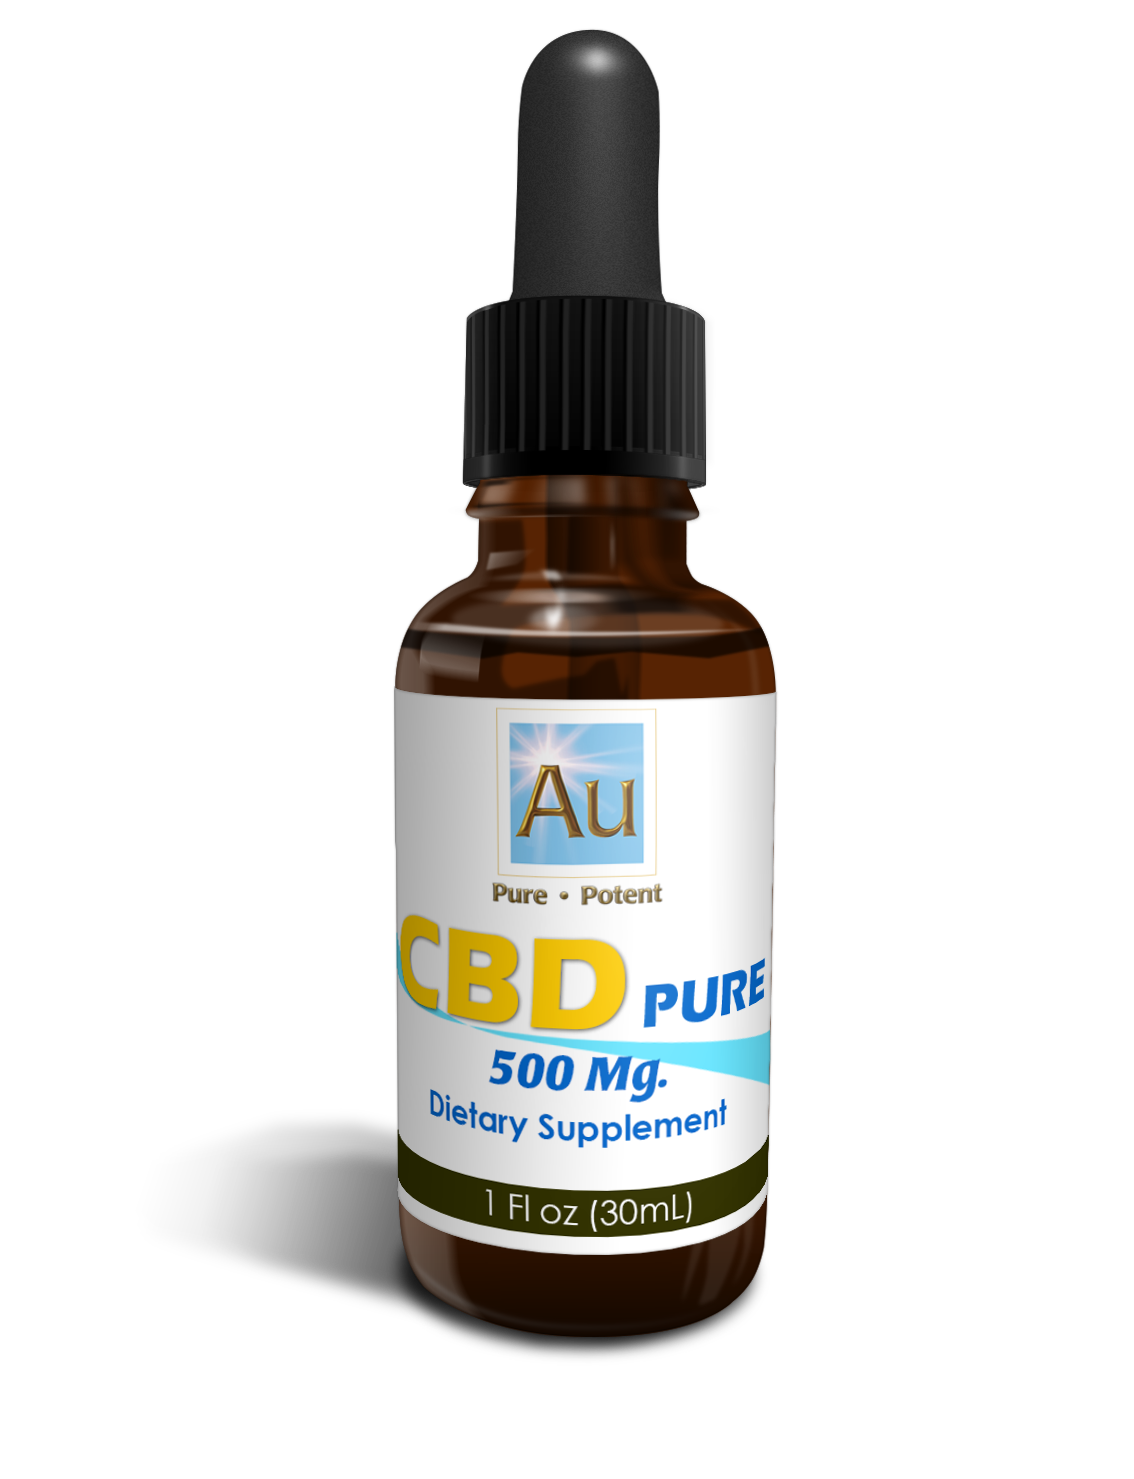 AU, CBD, CBD Pure, (500 mg)